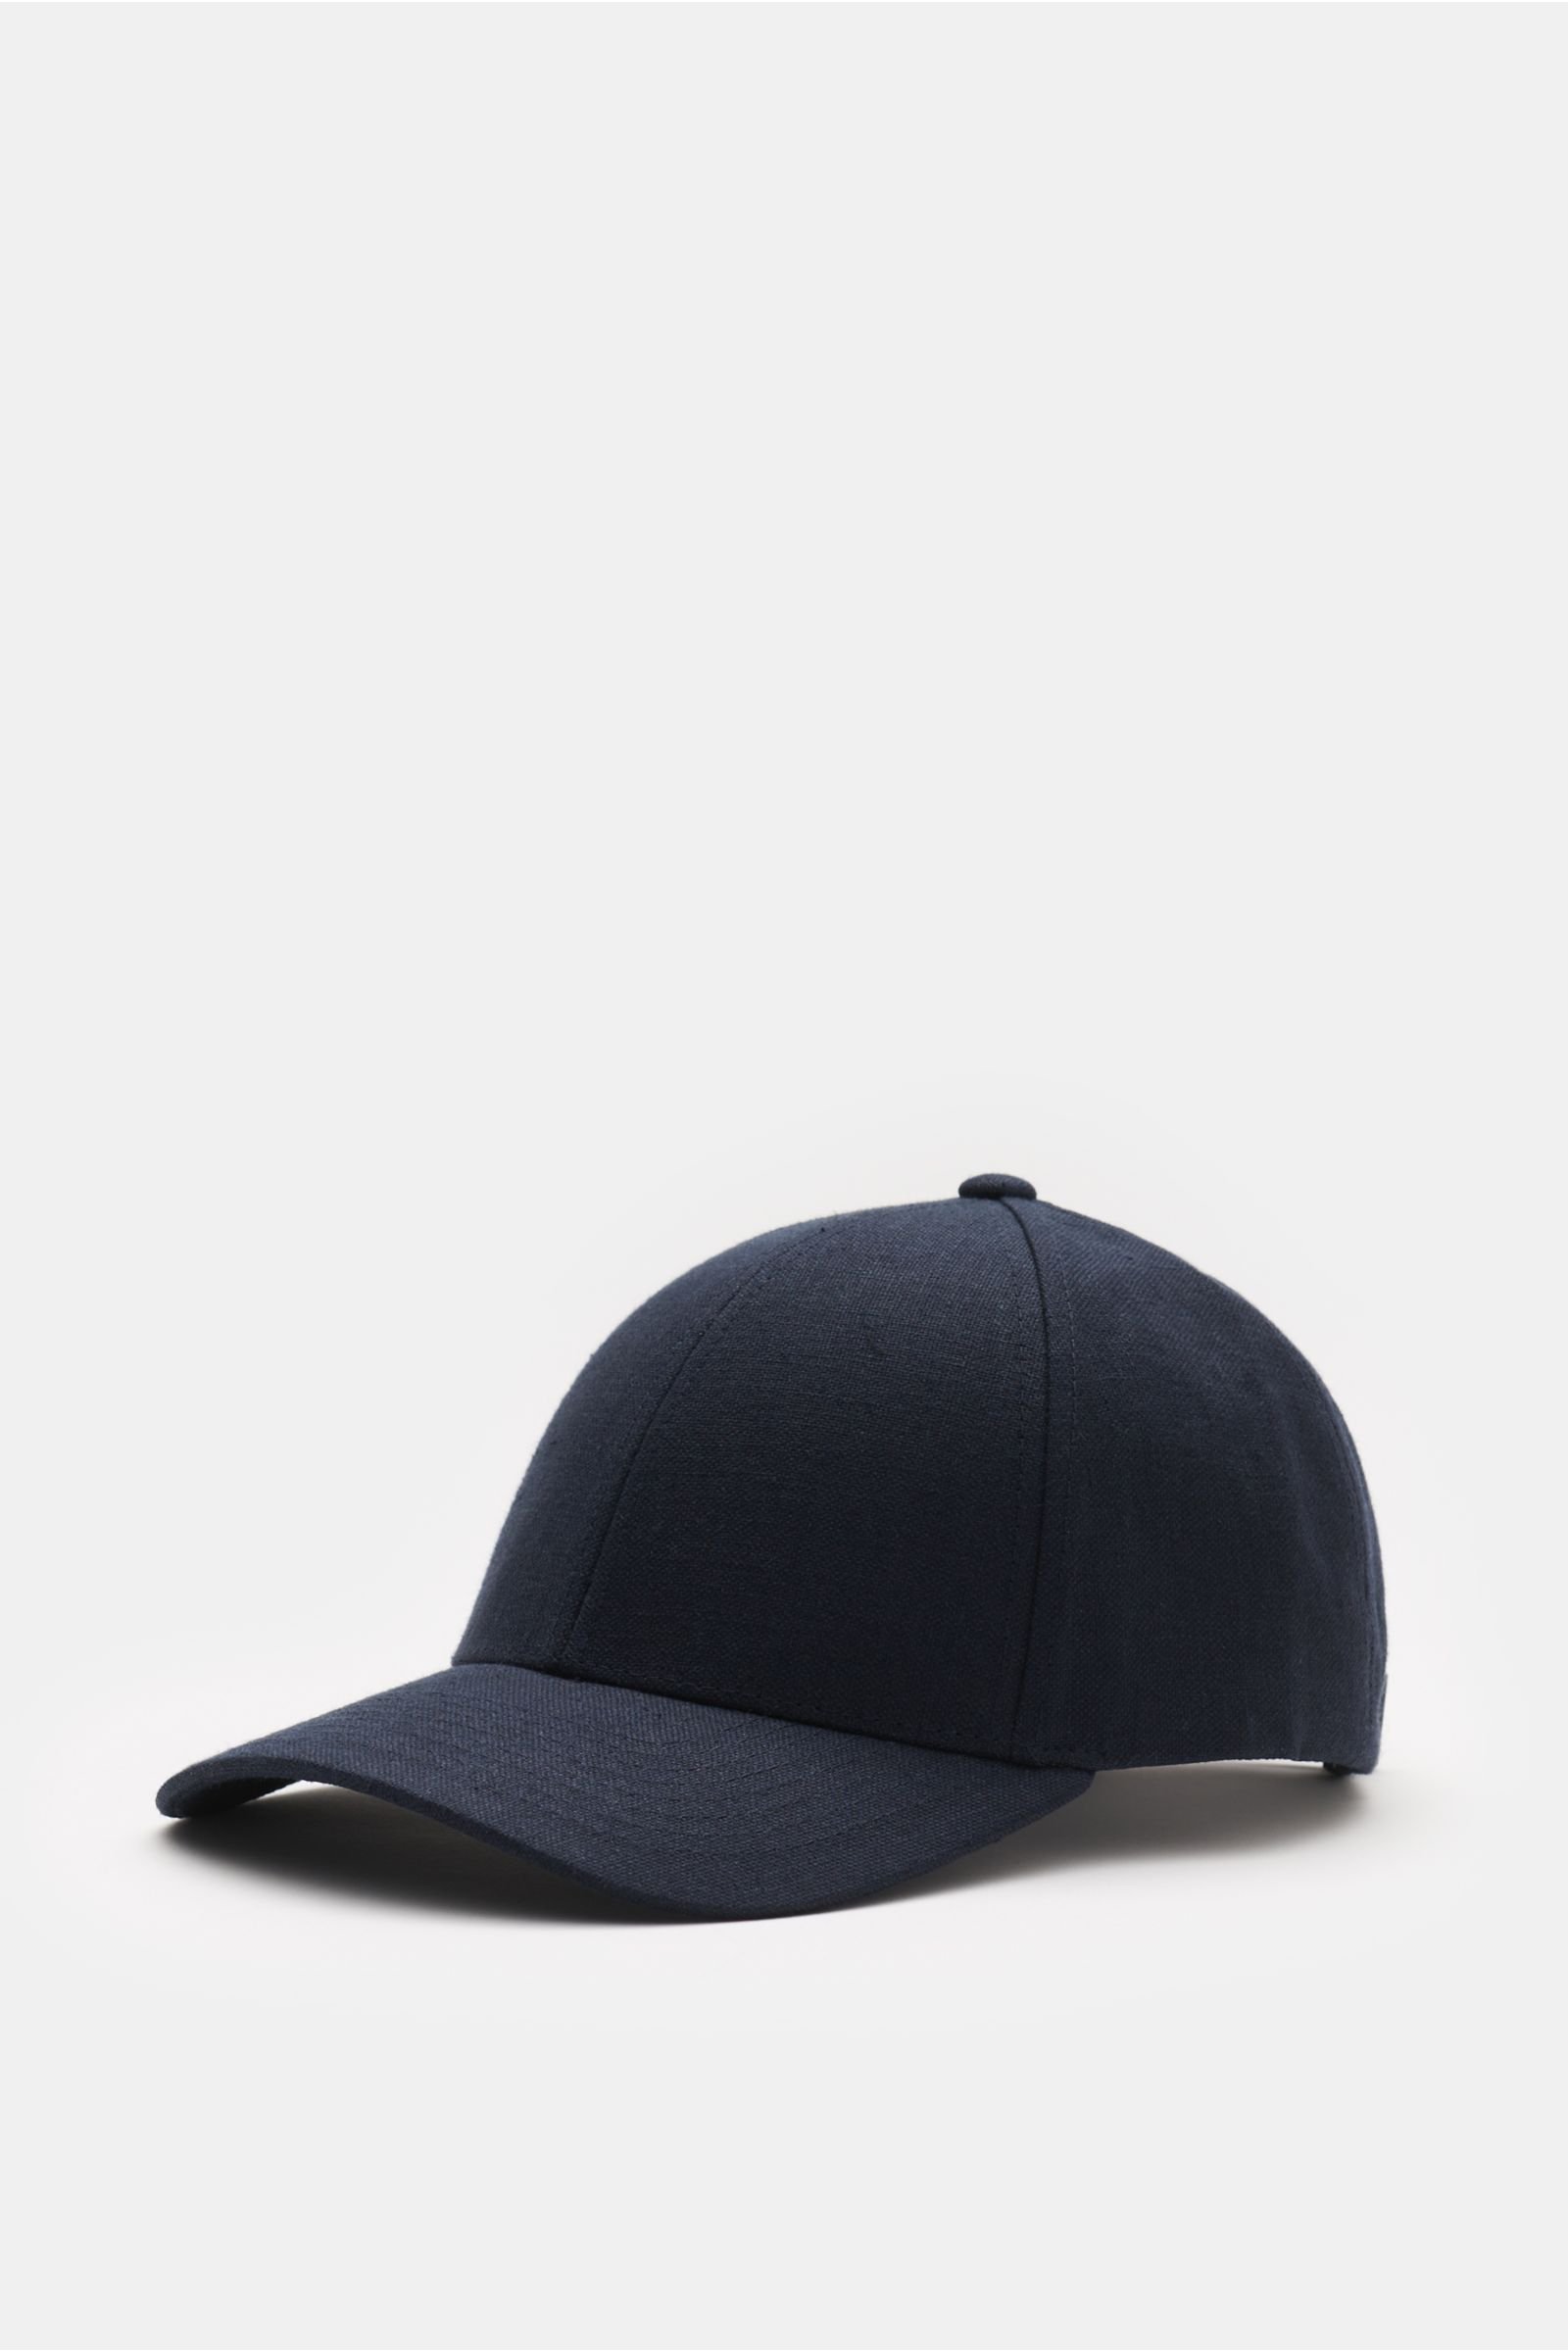 Linen baseball cap navy